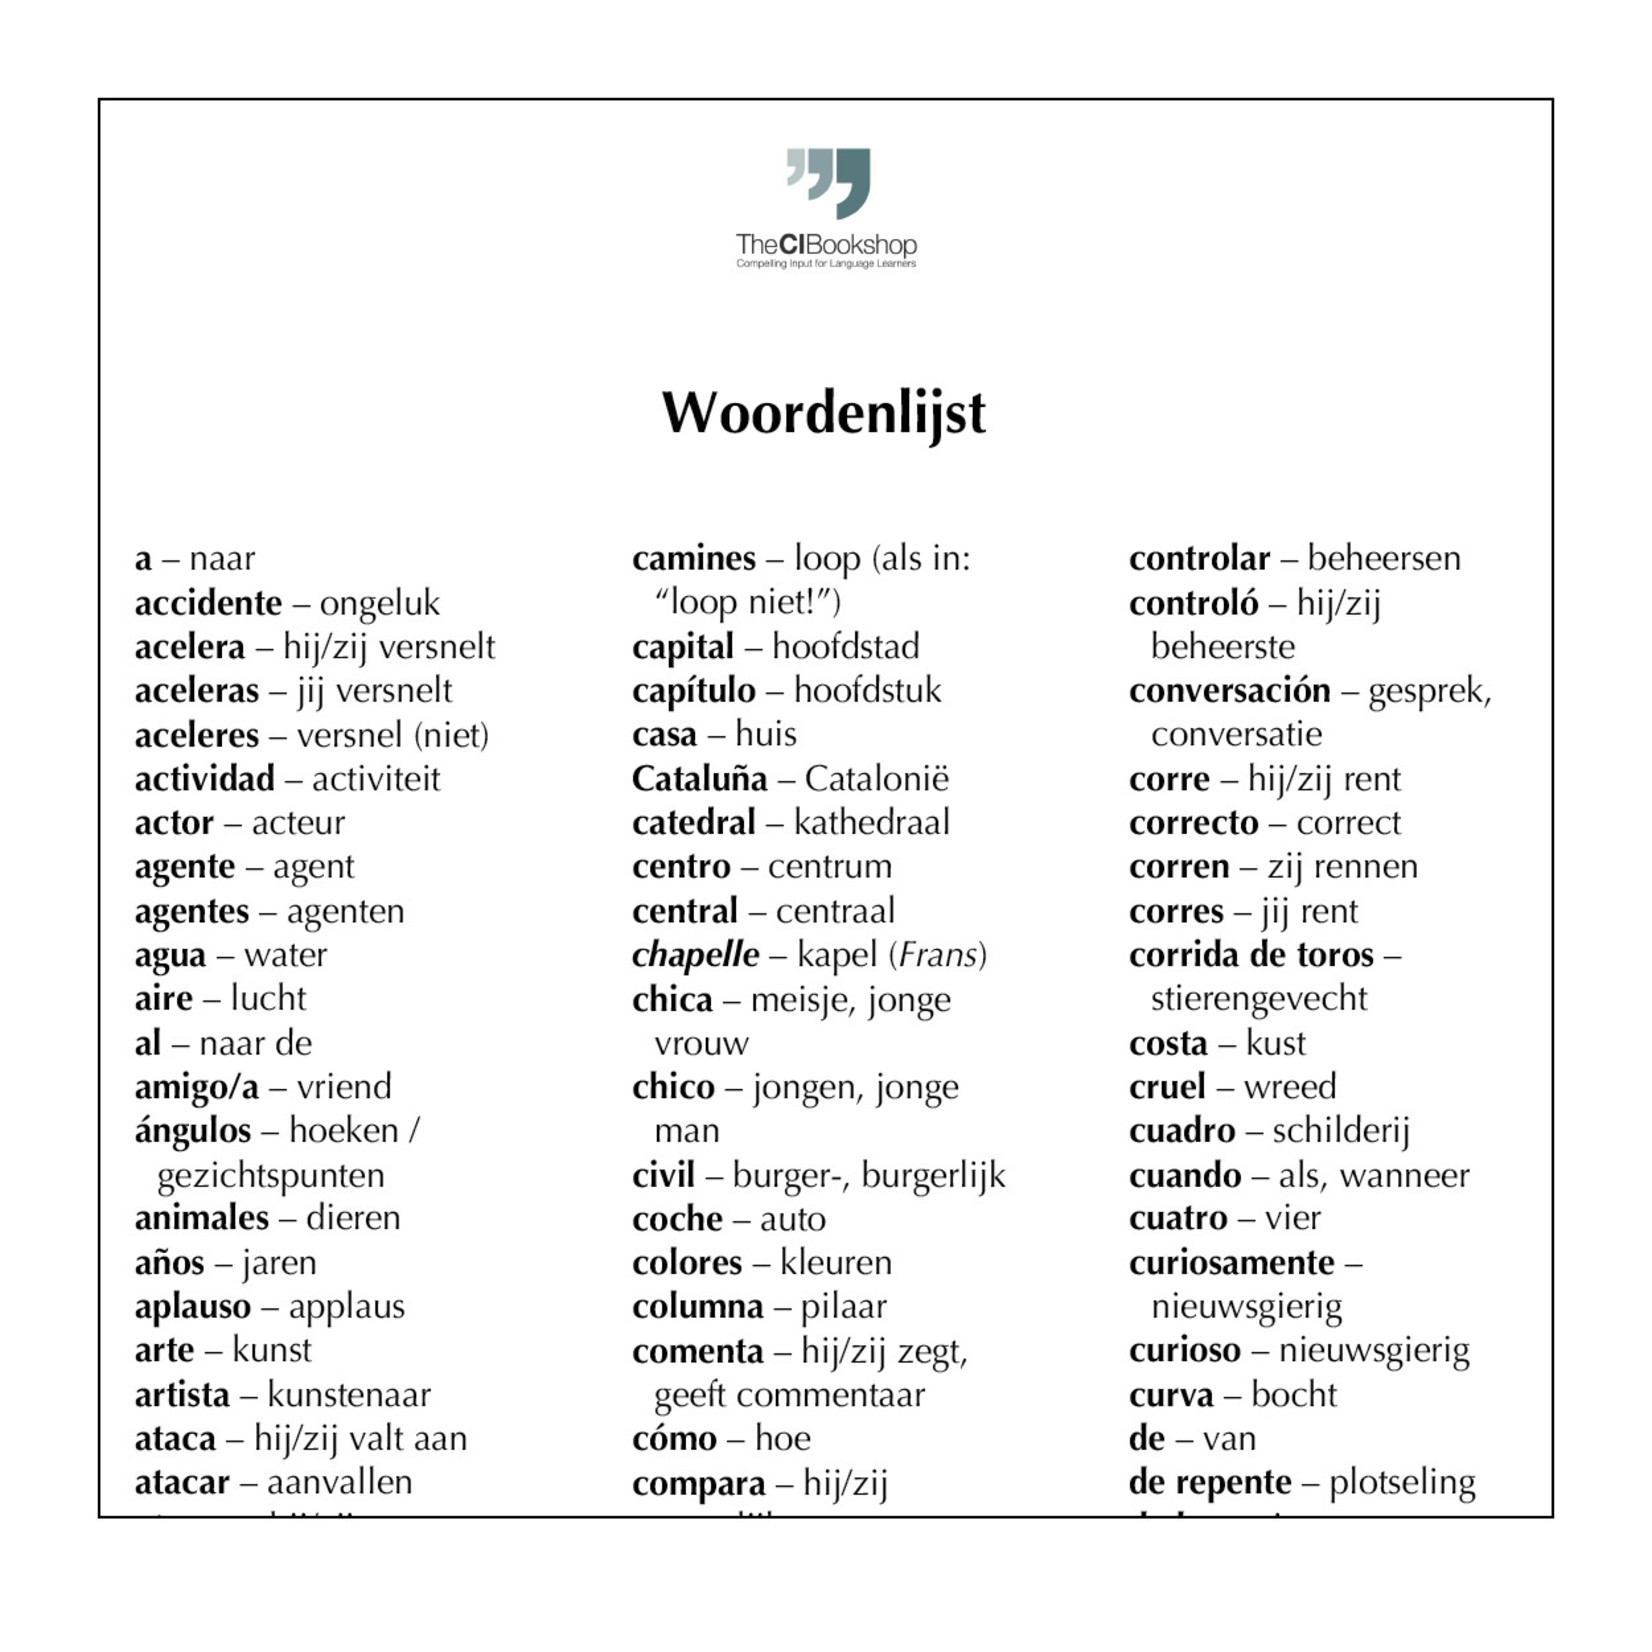 Dutch glossary for Las aventuras de Isabela